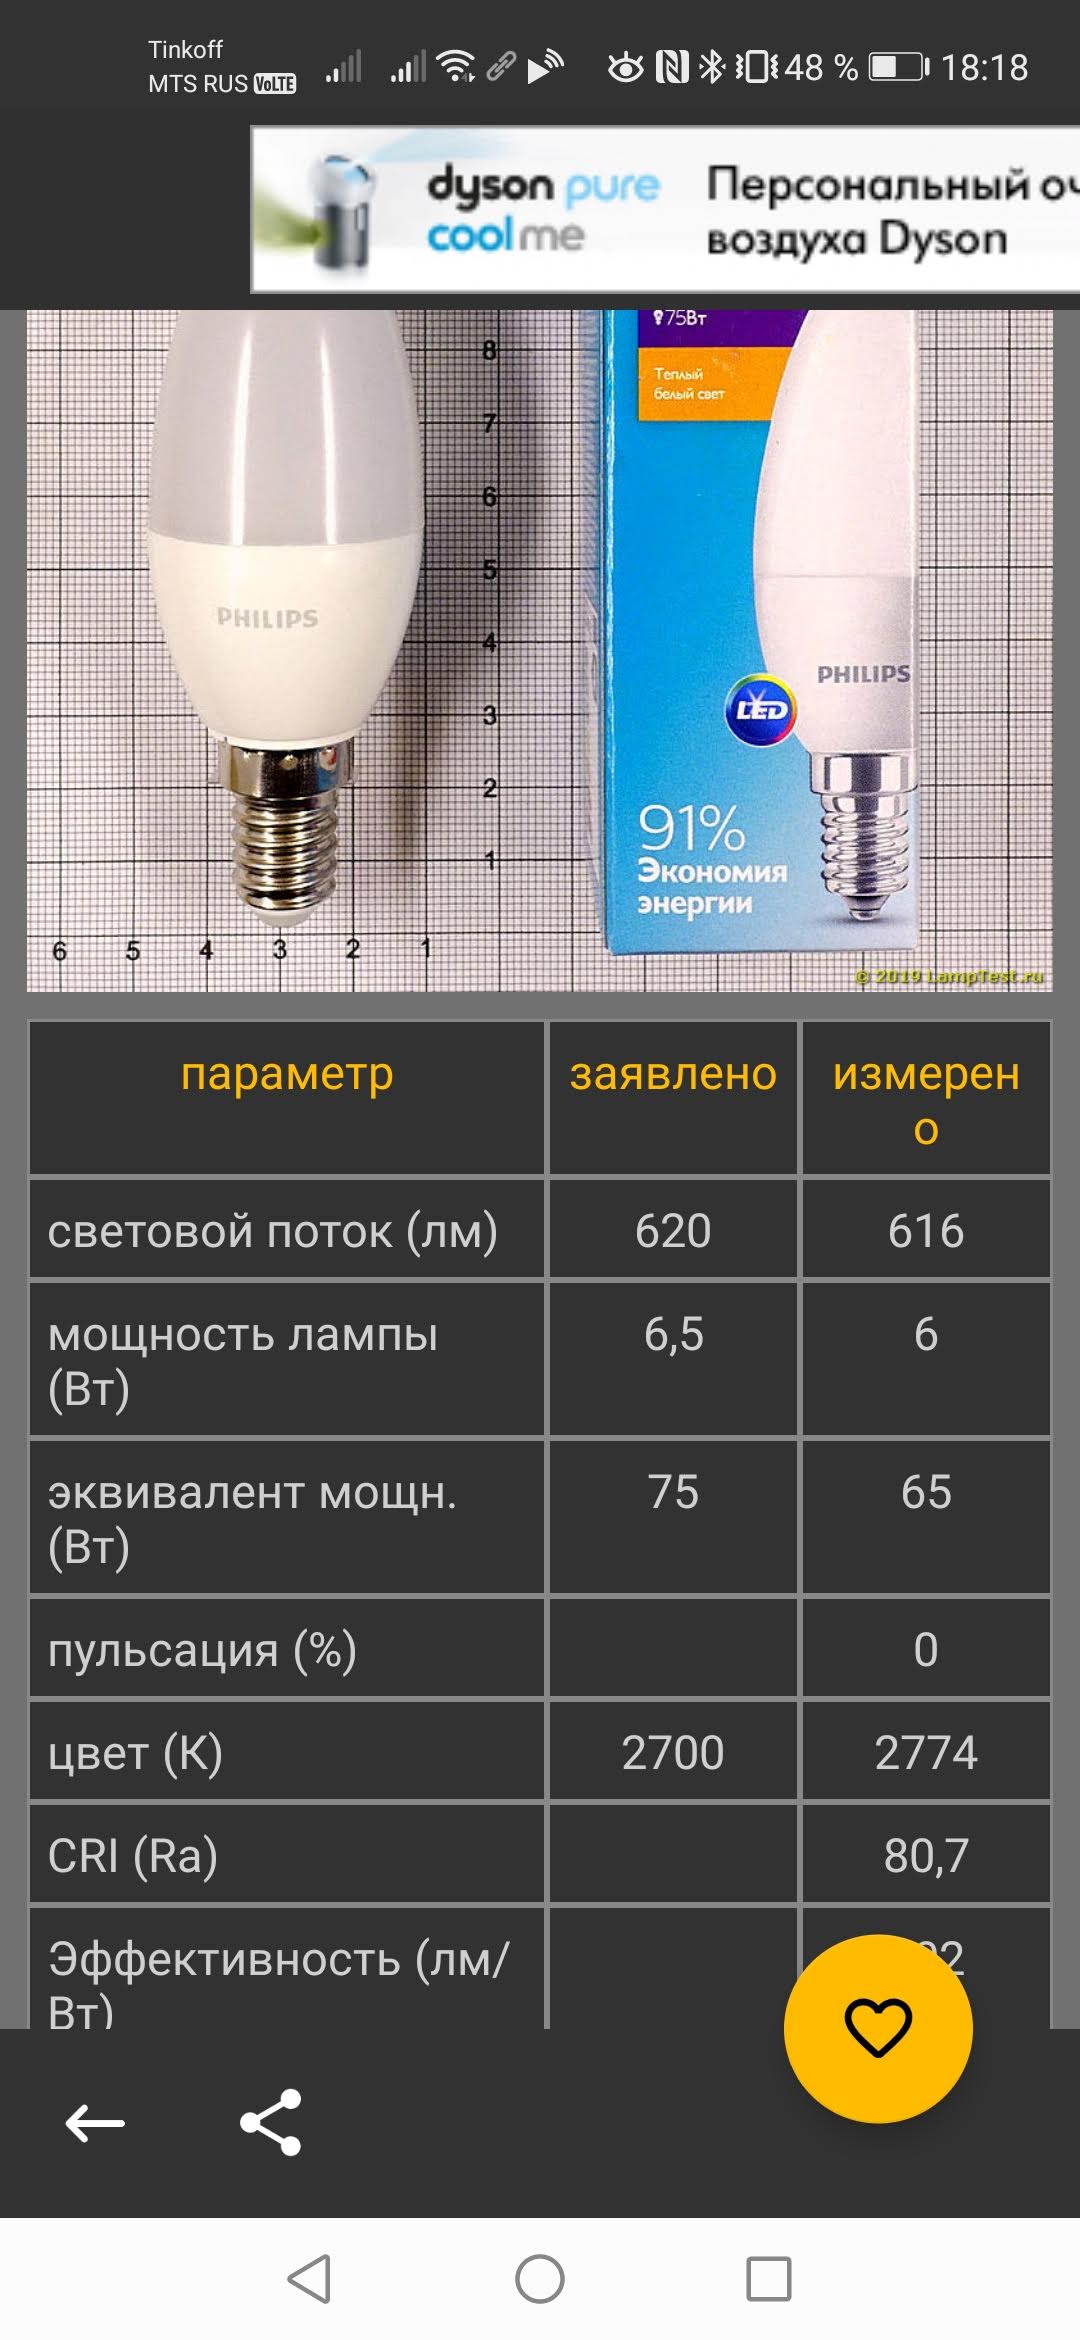 Не покупайте светодиодные лампы, не проверив их в этом приложении лампы,приложения,технологии